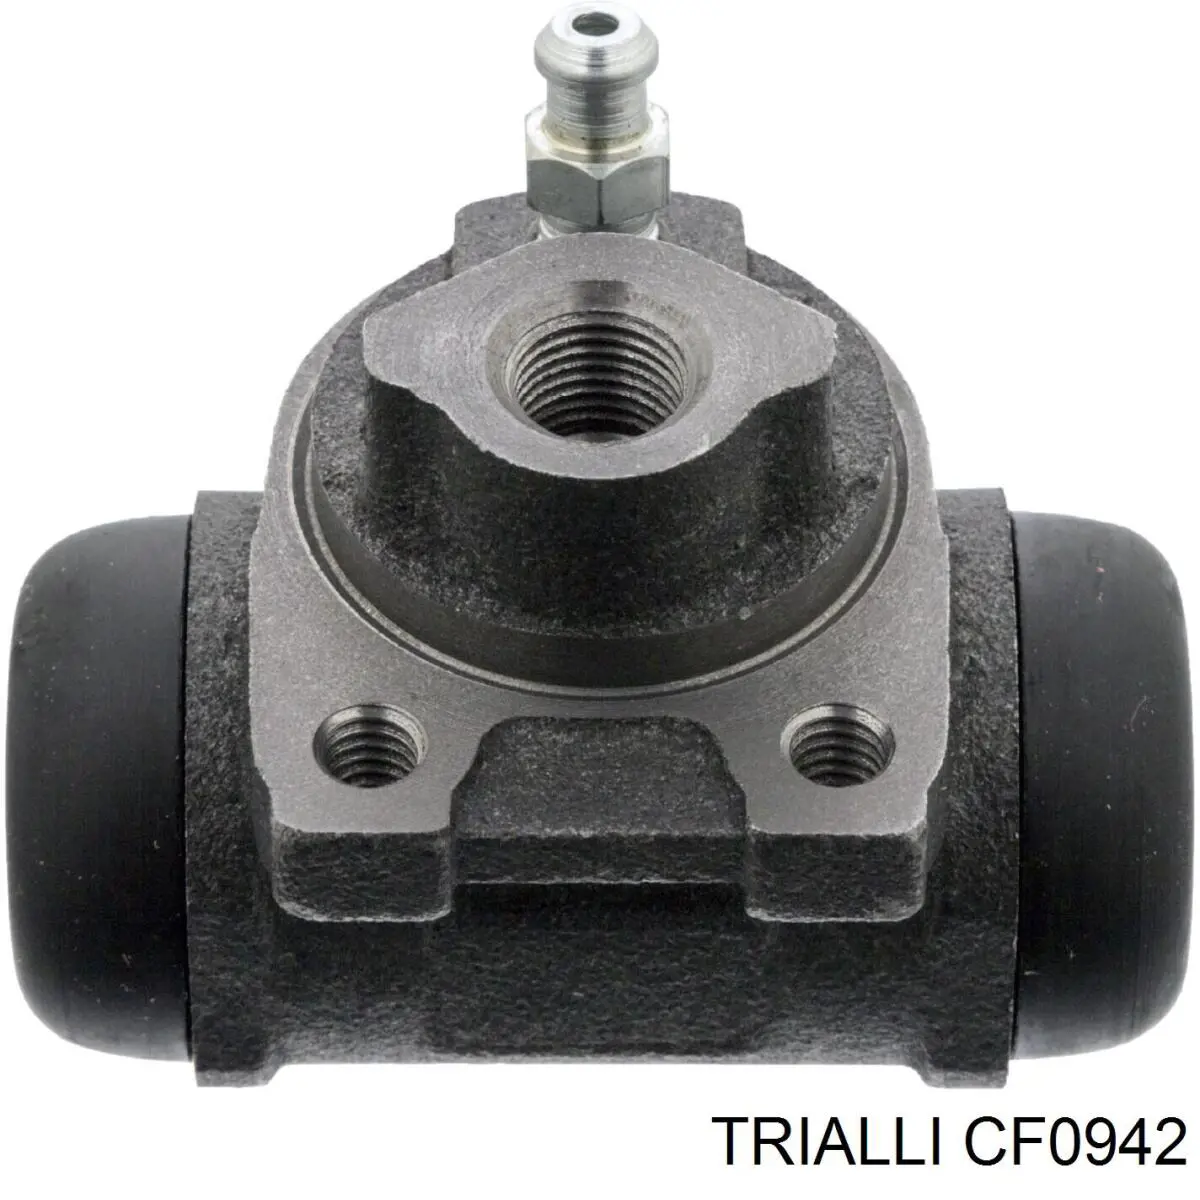 CF0942 Trialli cilindro de freno de rueda trasero